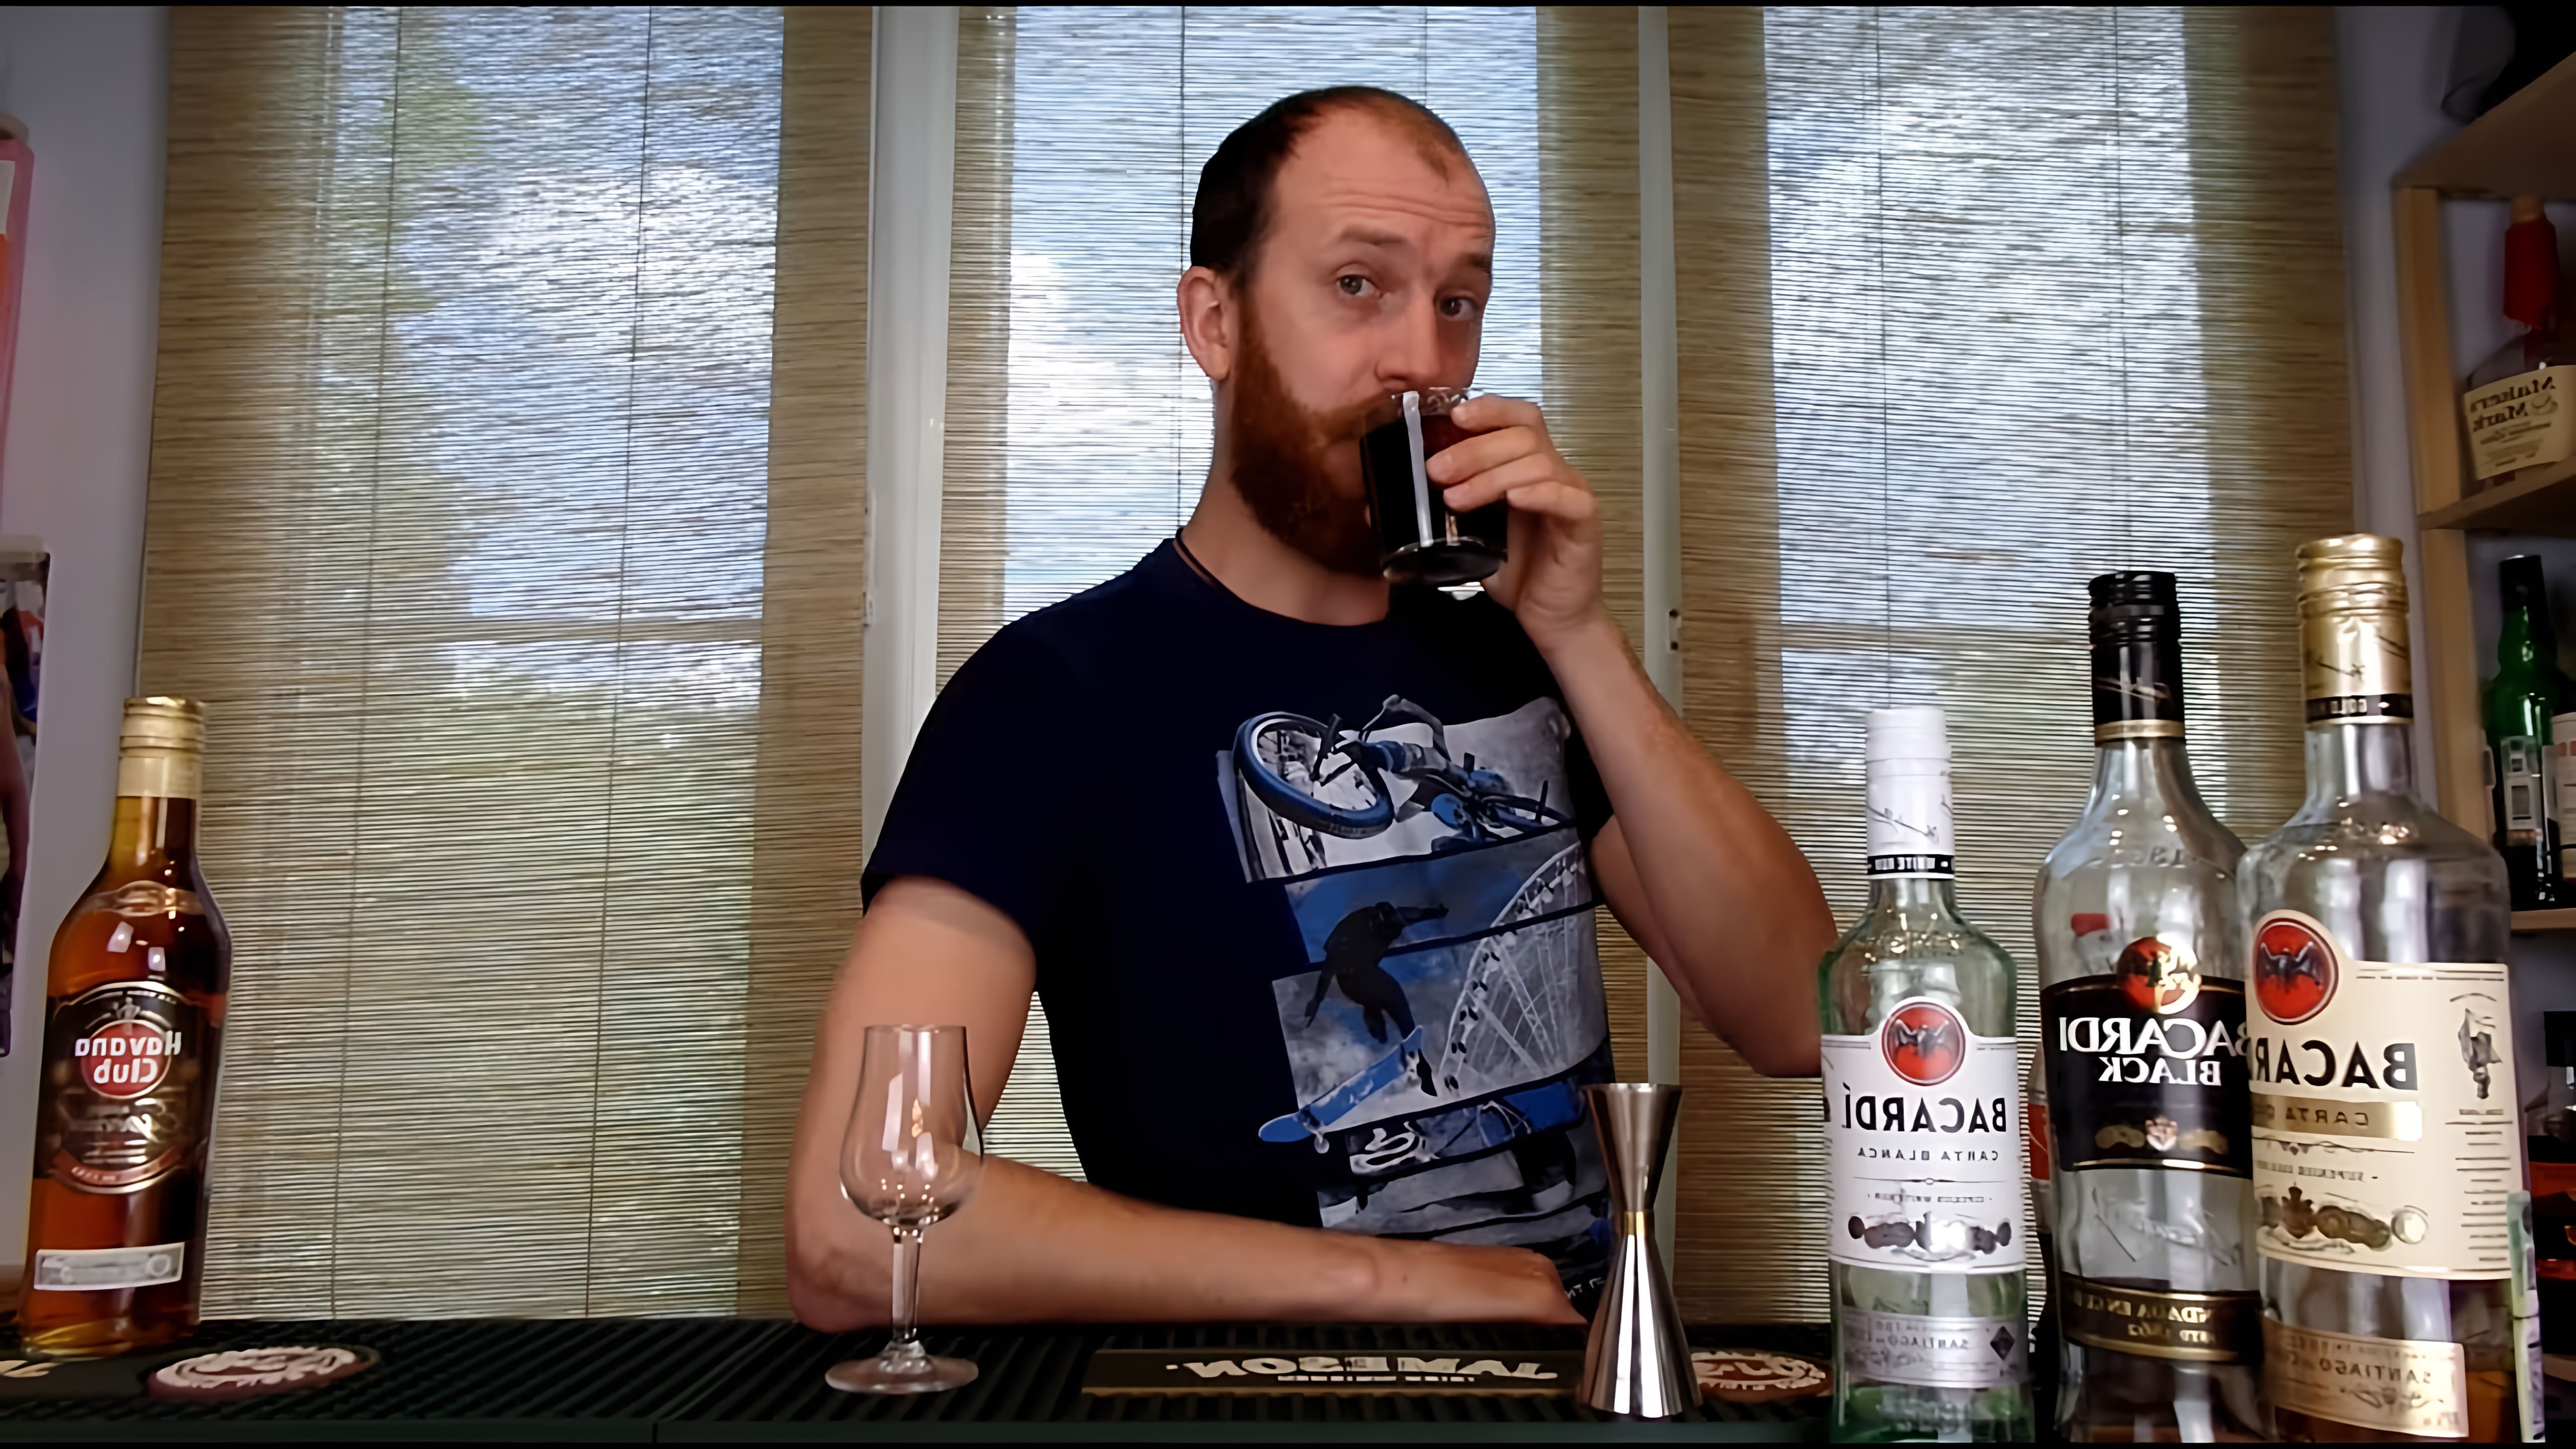 В данном видео рассматриваются различные способы употребления рома, включая его сочетание с колой, соками, а также в составе коктейлей